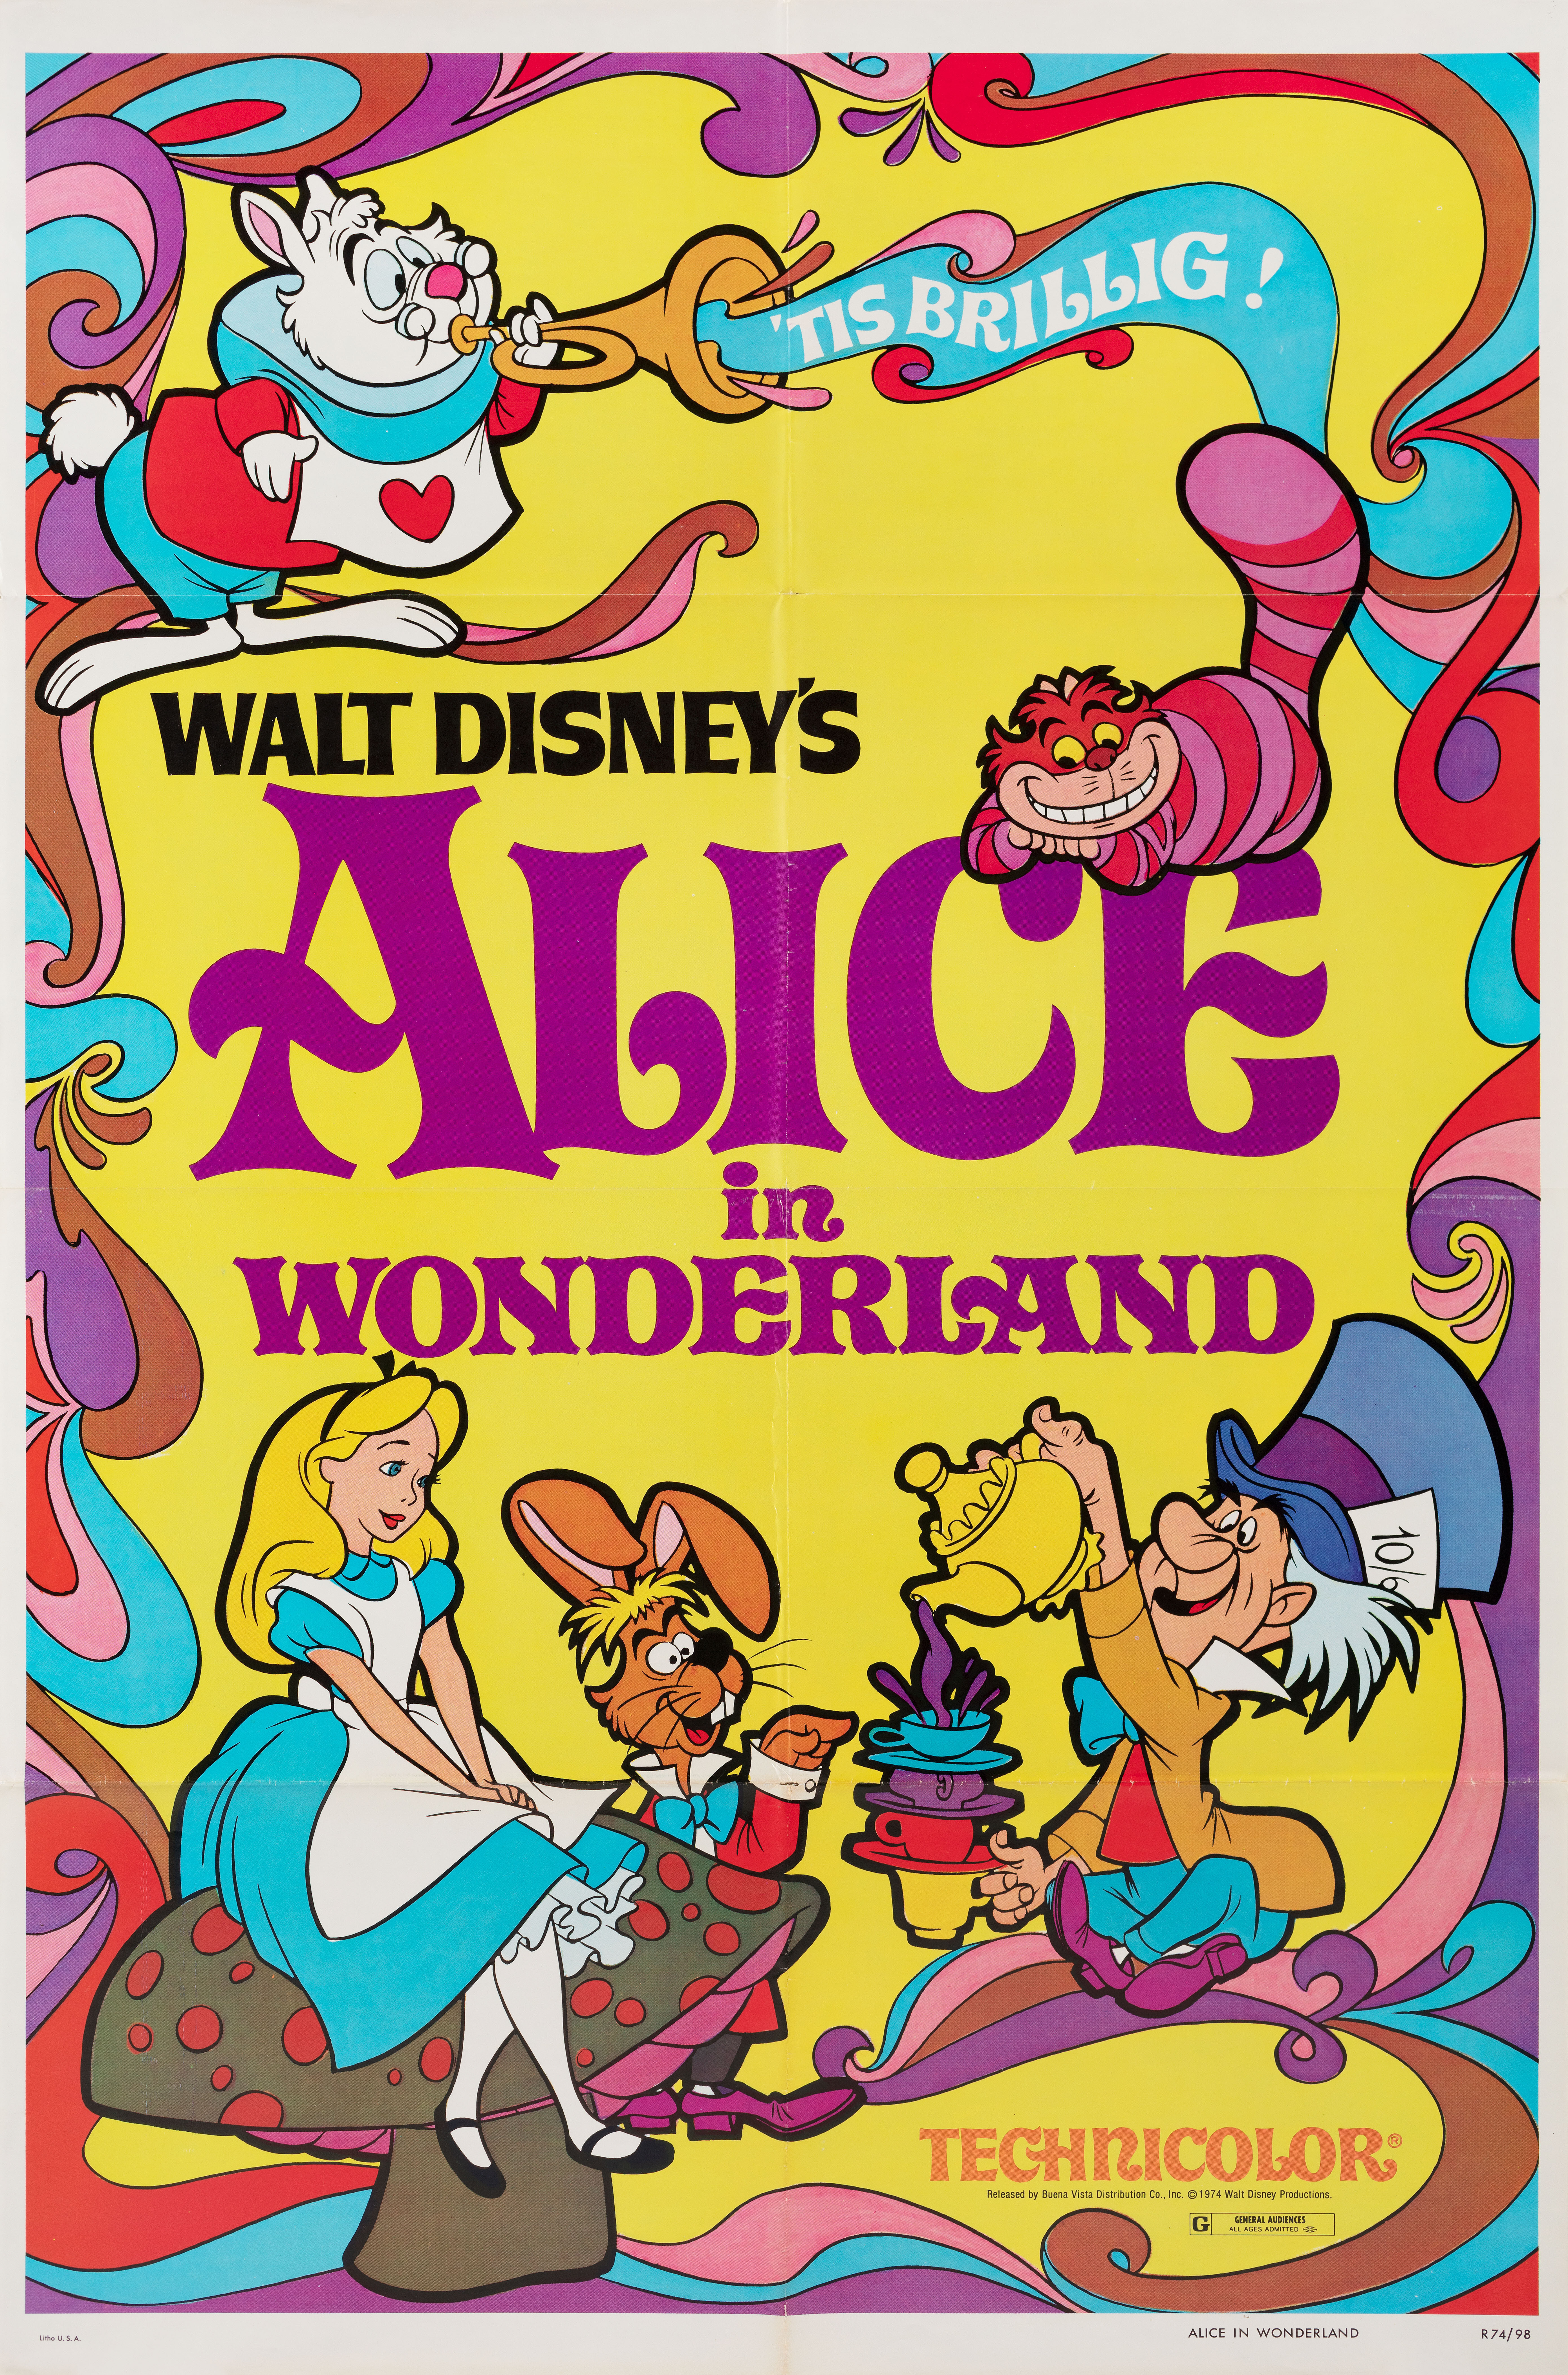 Алиса в стране чудес (Alice in Wonderland, 1951), режиссёр Клайд Джероними, американский постер к фильму (психоделическое искусство, 1981 год)